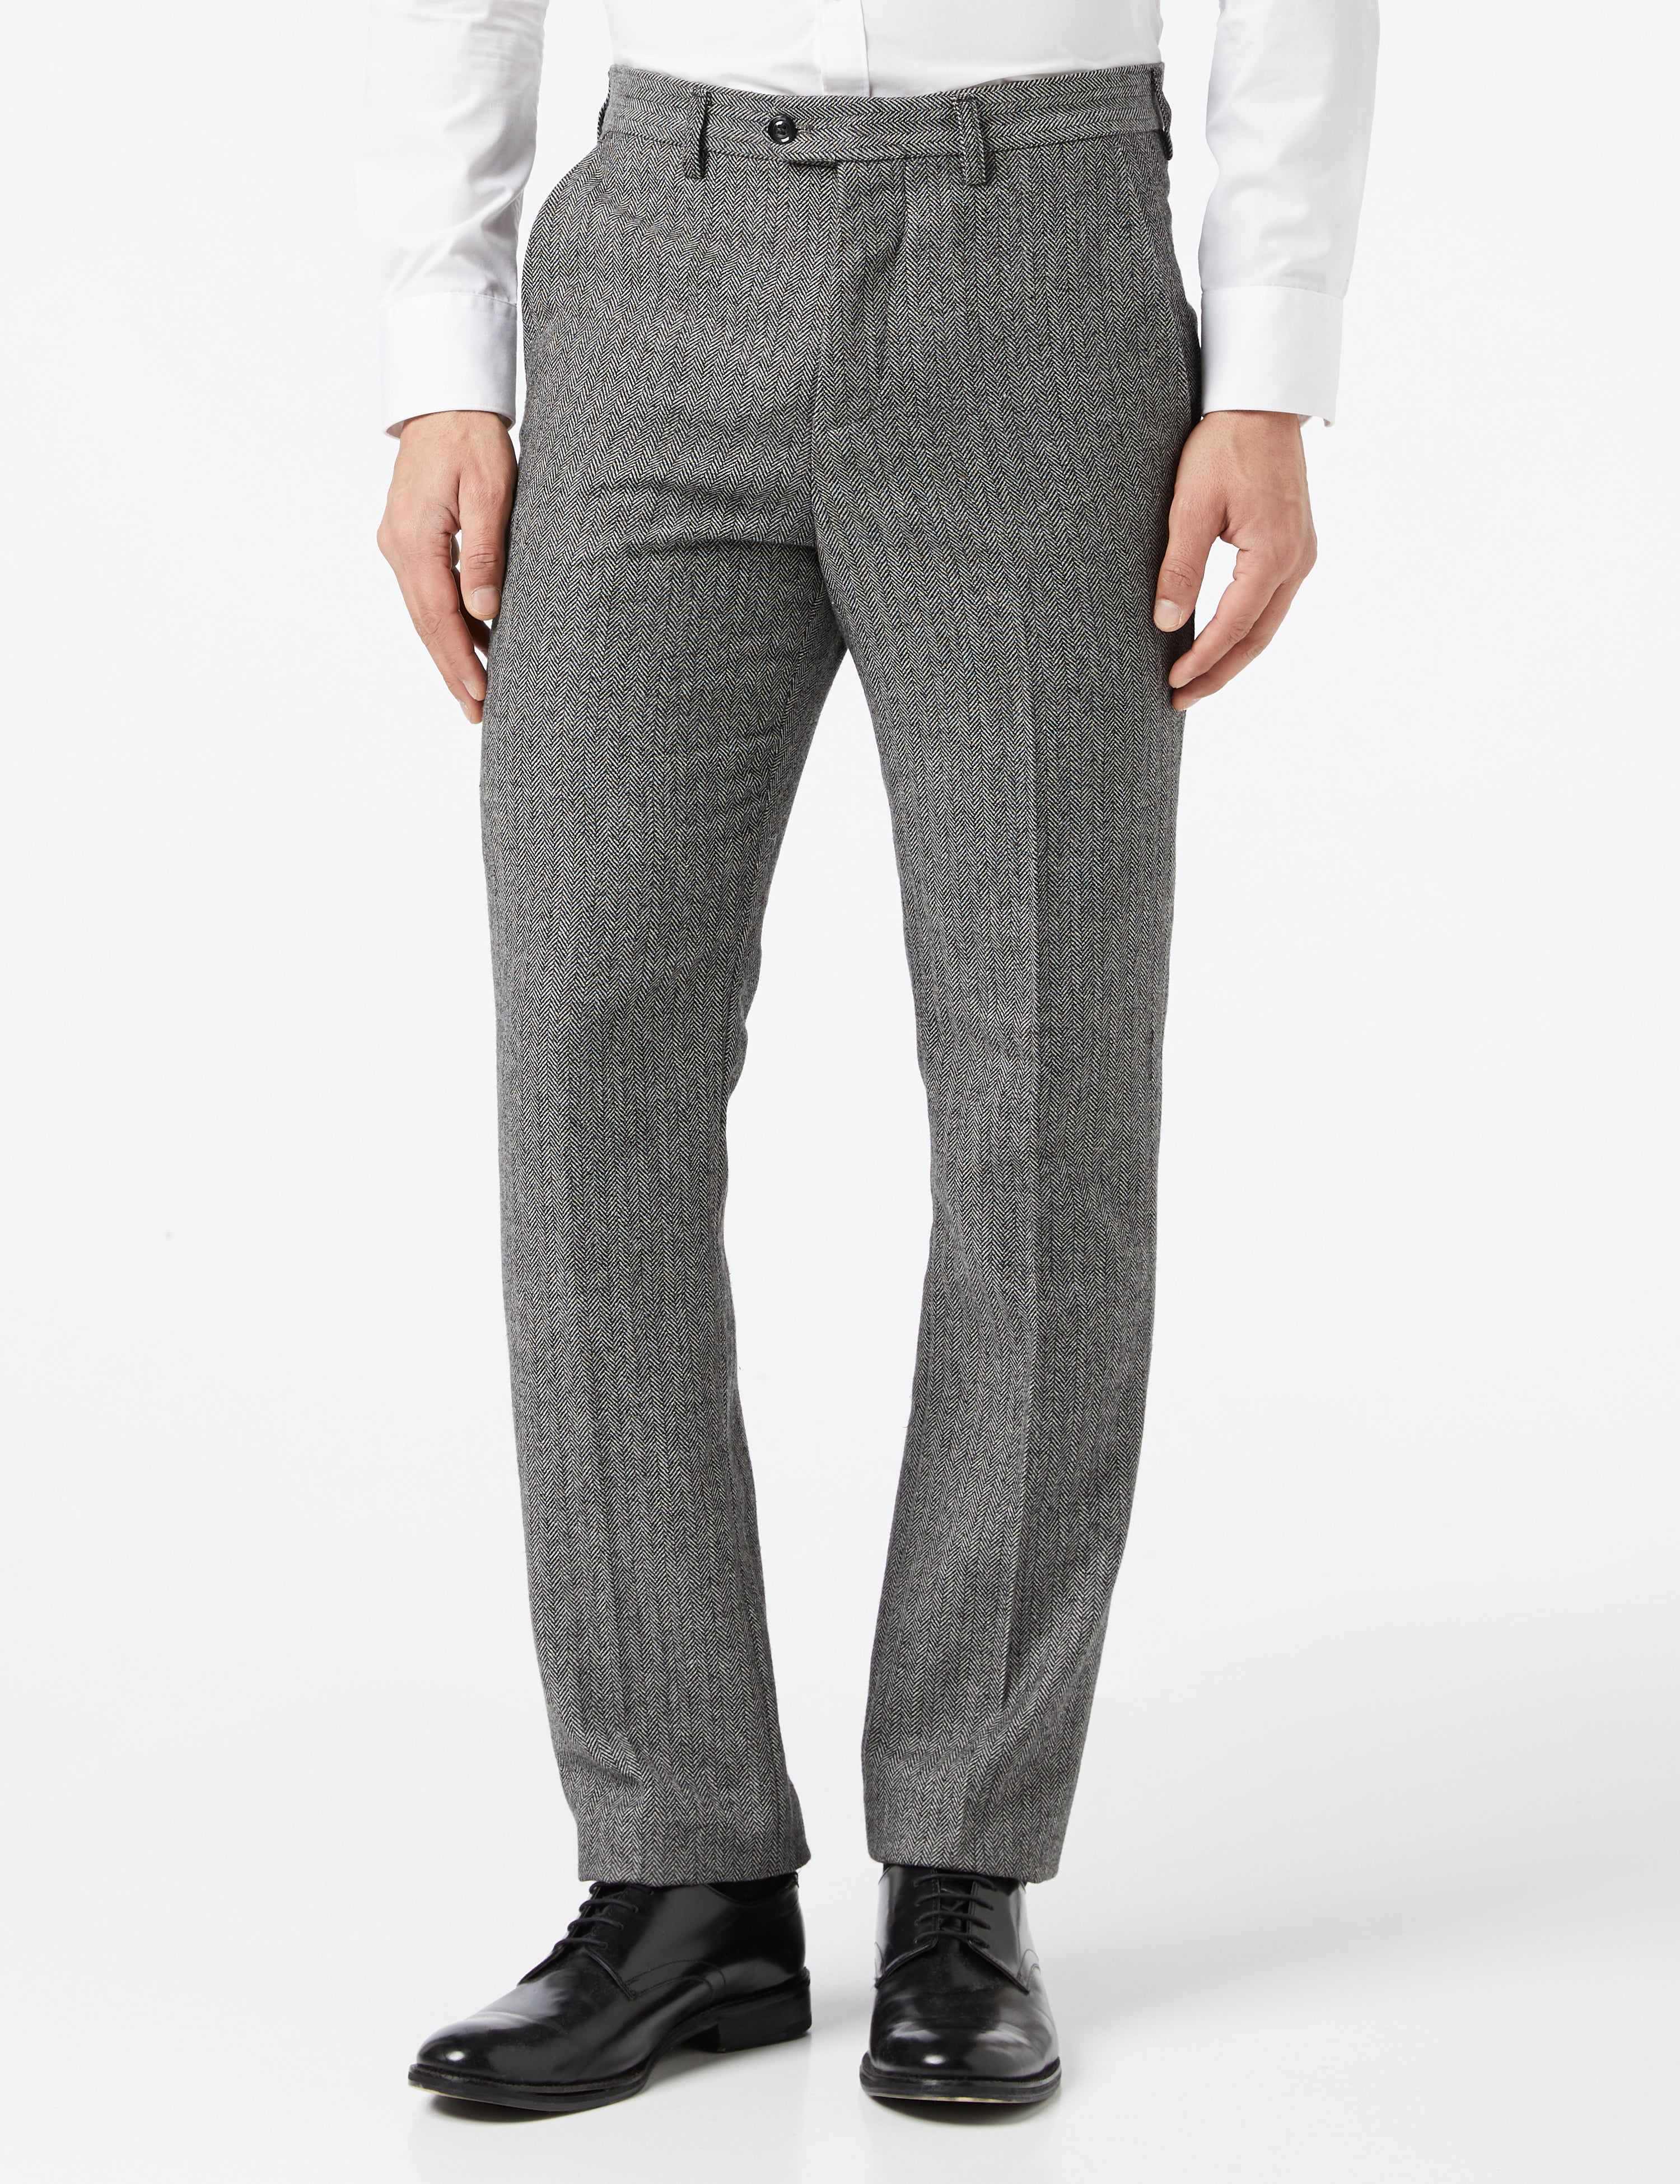 Grey Herringbone Tweed Trousers